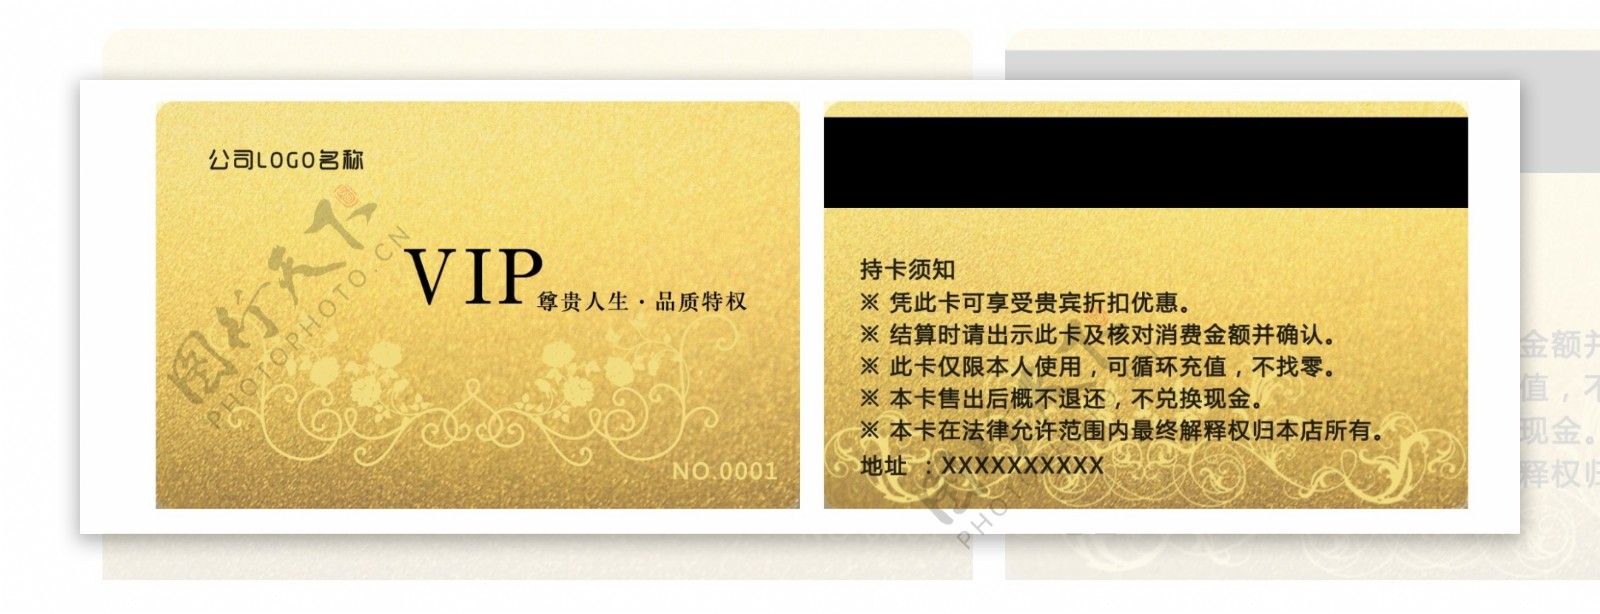 金卡VIP贵宾卡会员卡设计PSD源文件